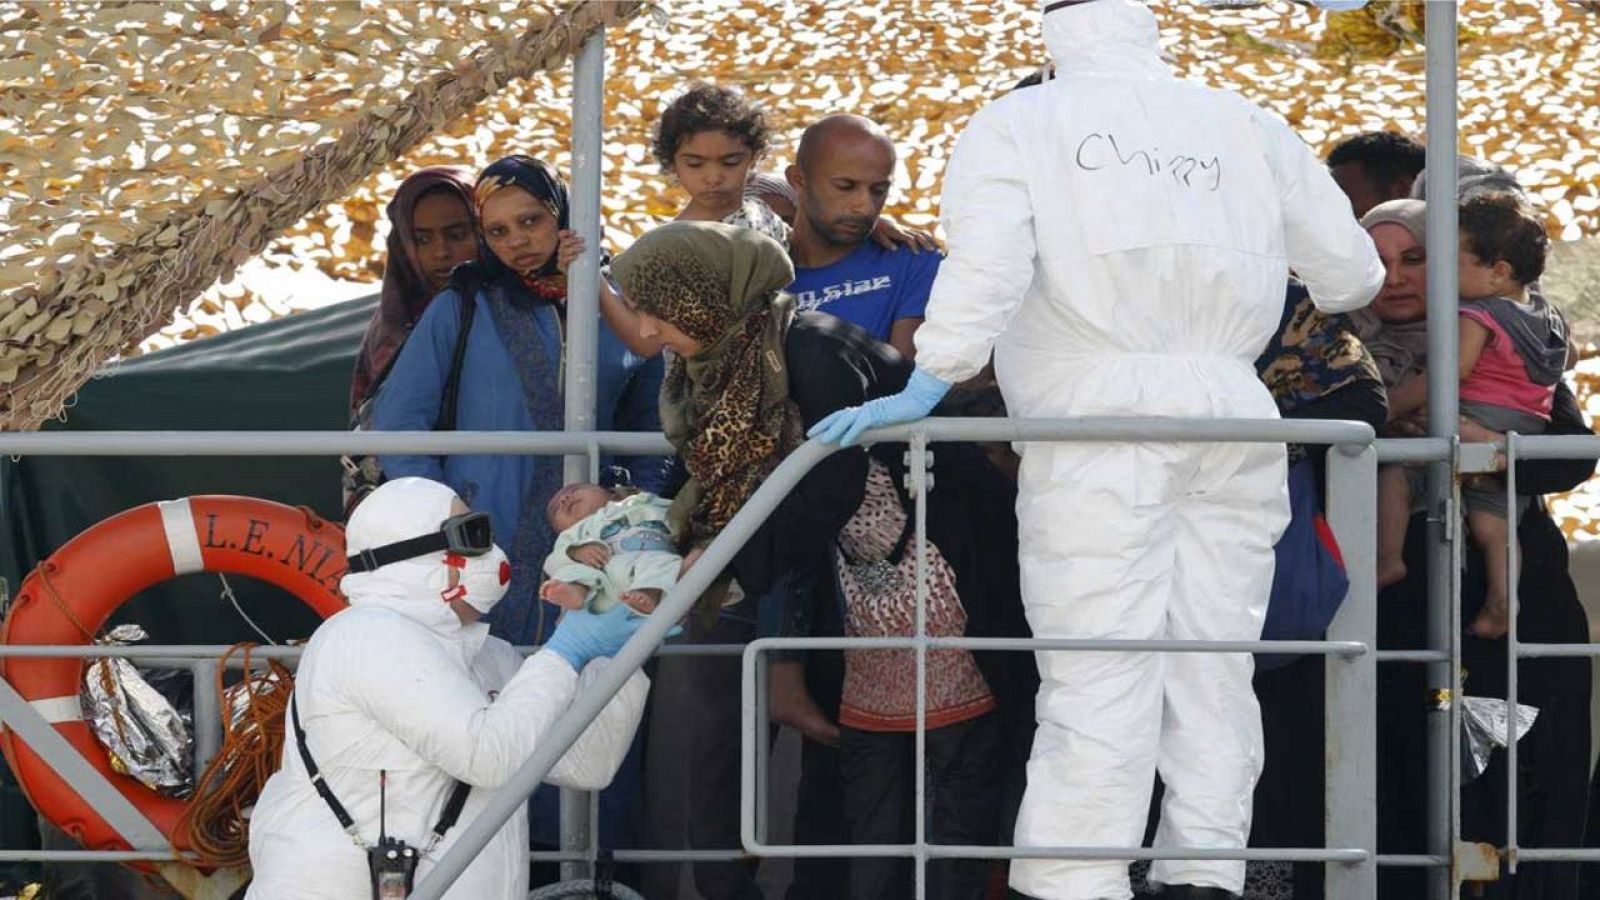 Los inmigrantes son ayudados a desembarcar del 'L.E. Niamh' en el puerto de Messina (Italia)